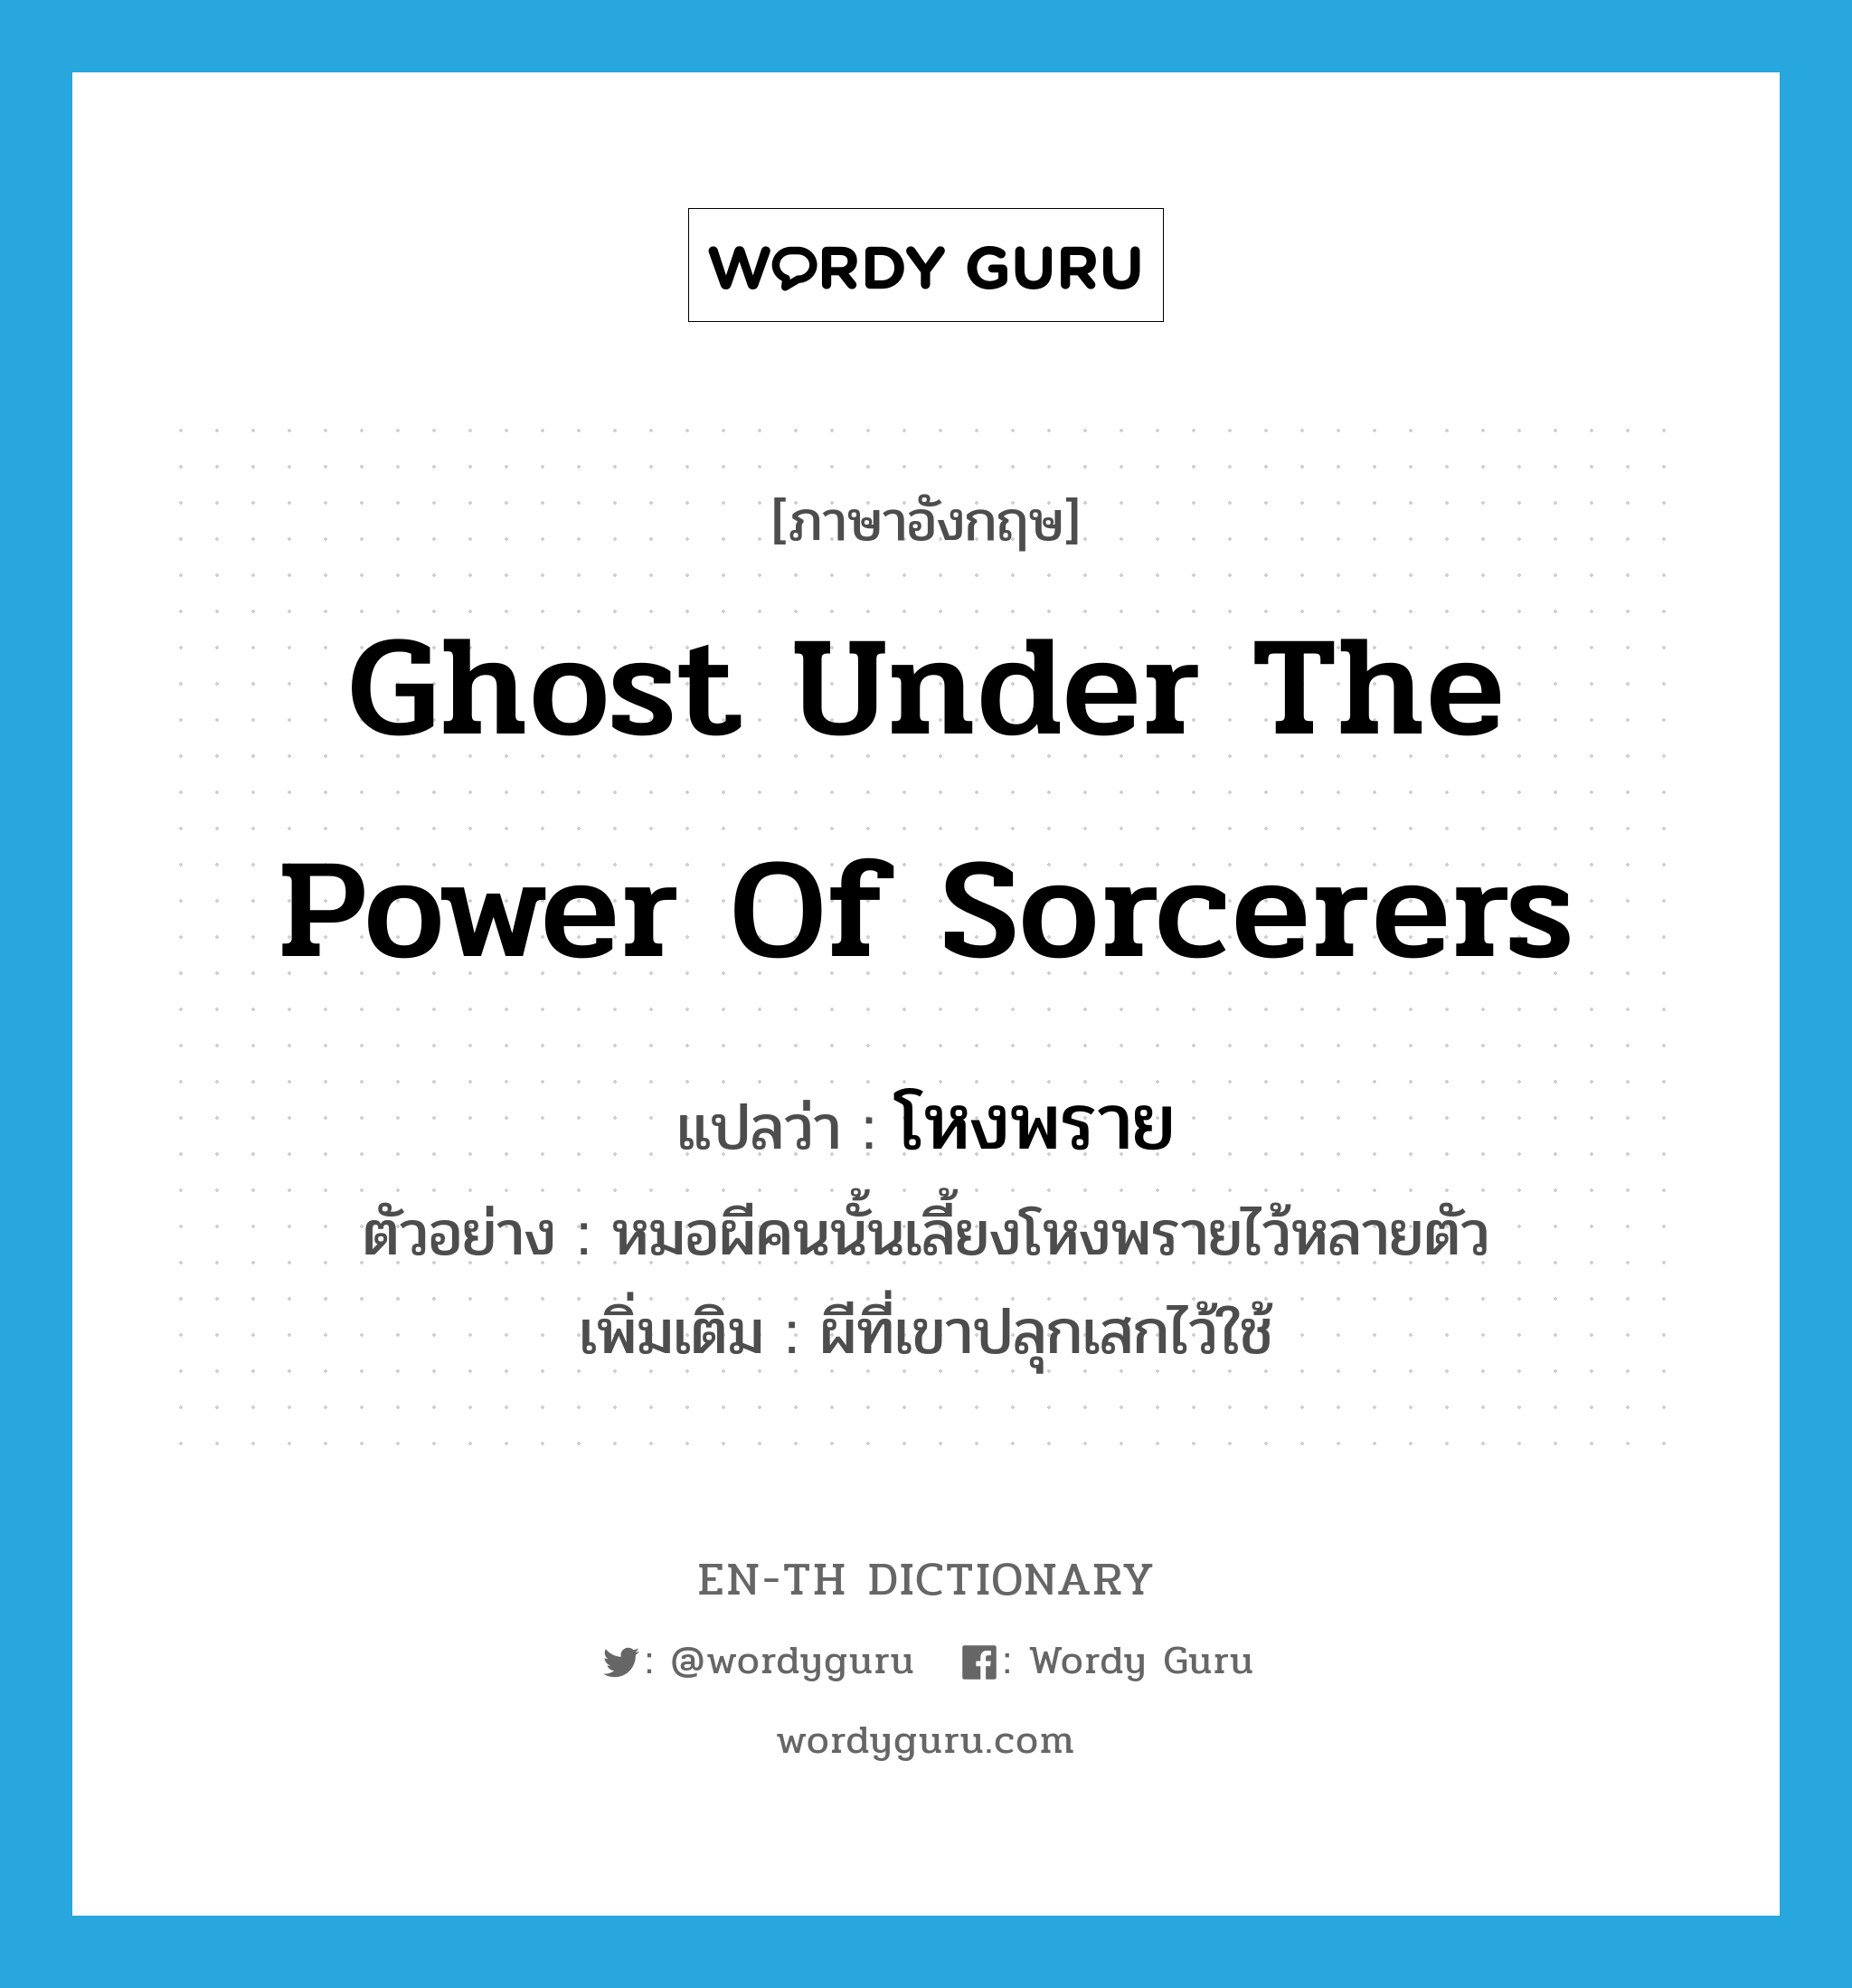 ghost under the power of sorcerers แปลว่า?, คำศัพท์ภาษาอังกฤษ ghost under the power of sorcerers แปลว่า โหงพราย ประเภท N ตัวอย่าง หมอผีคนนั้นเลี้ยงโหงพรายไว้หลายตัว เพิ่มเติม ผีที่เขาปลุกเสกไว้ใช้ หมวด N